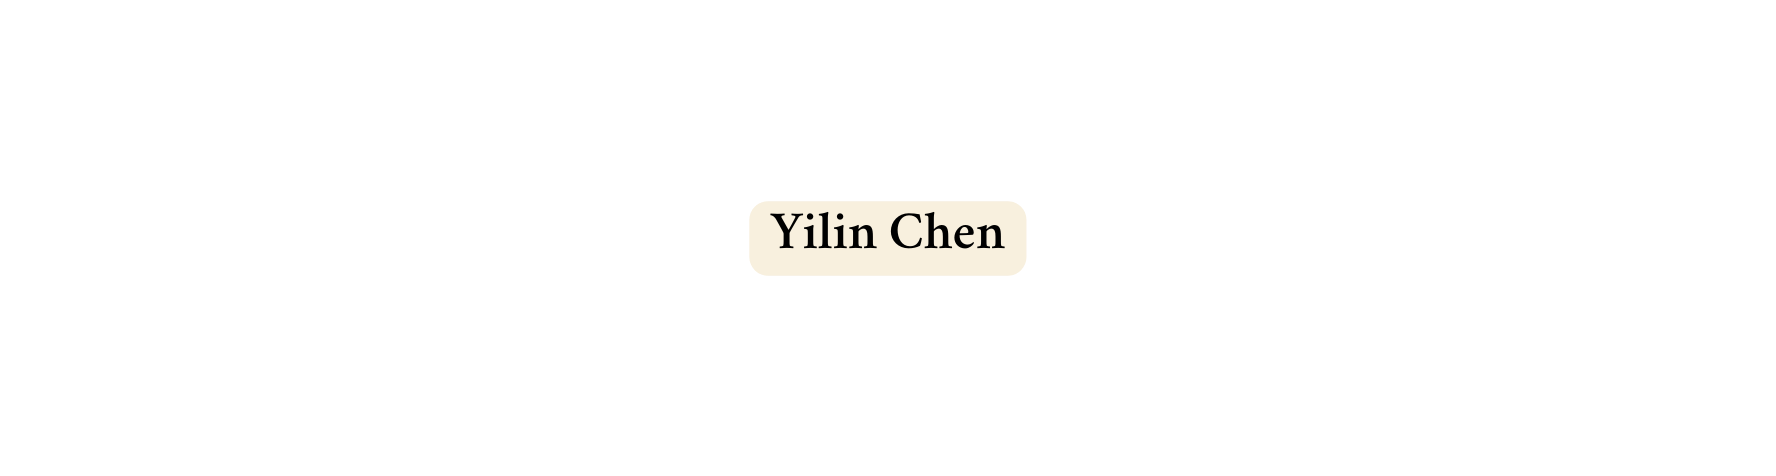 Yilin Chen